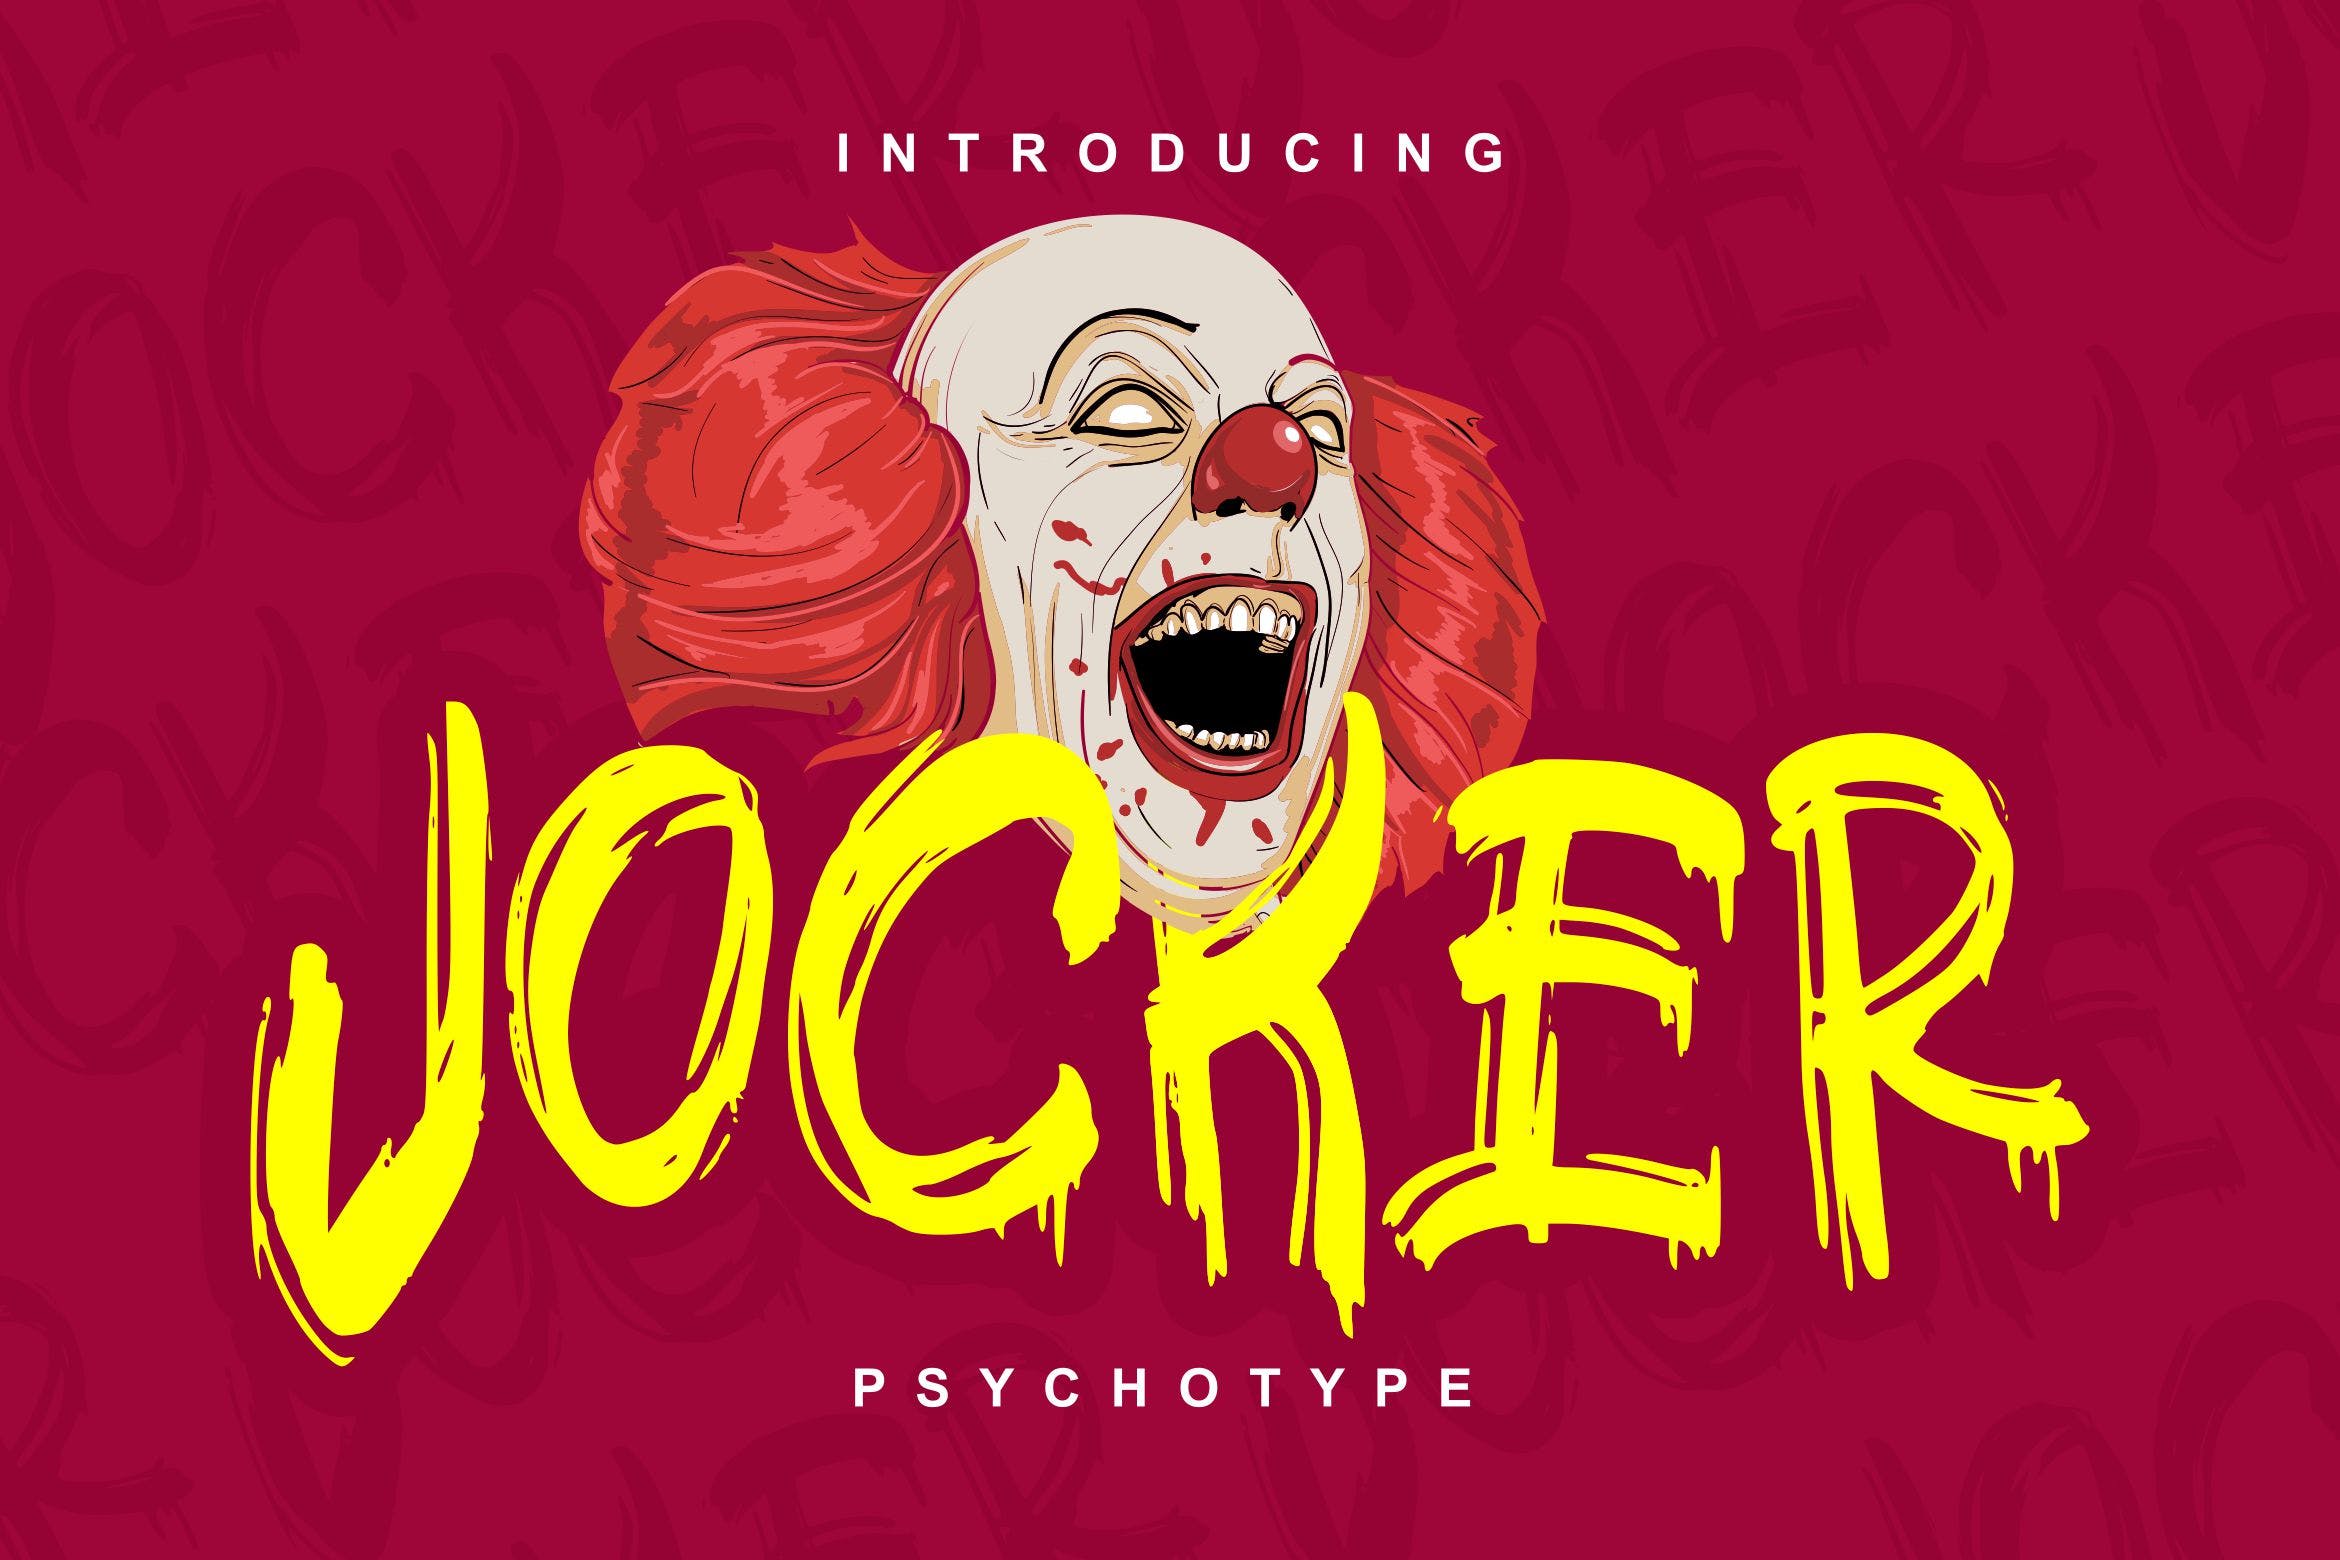 极具个性的英文笔刷装饰字体大洋岛精选 Jocker | Psychotype Font Theme插图